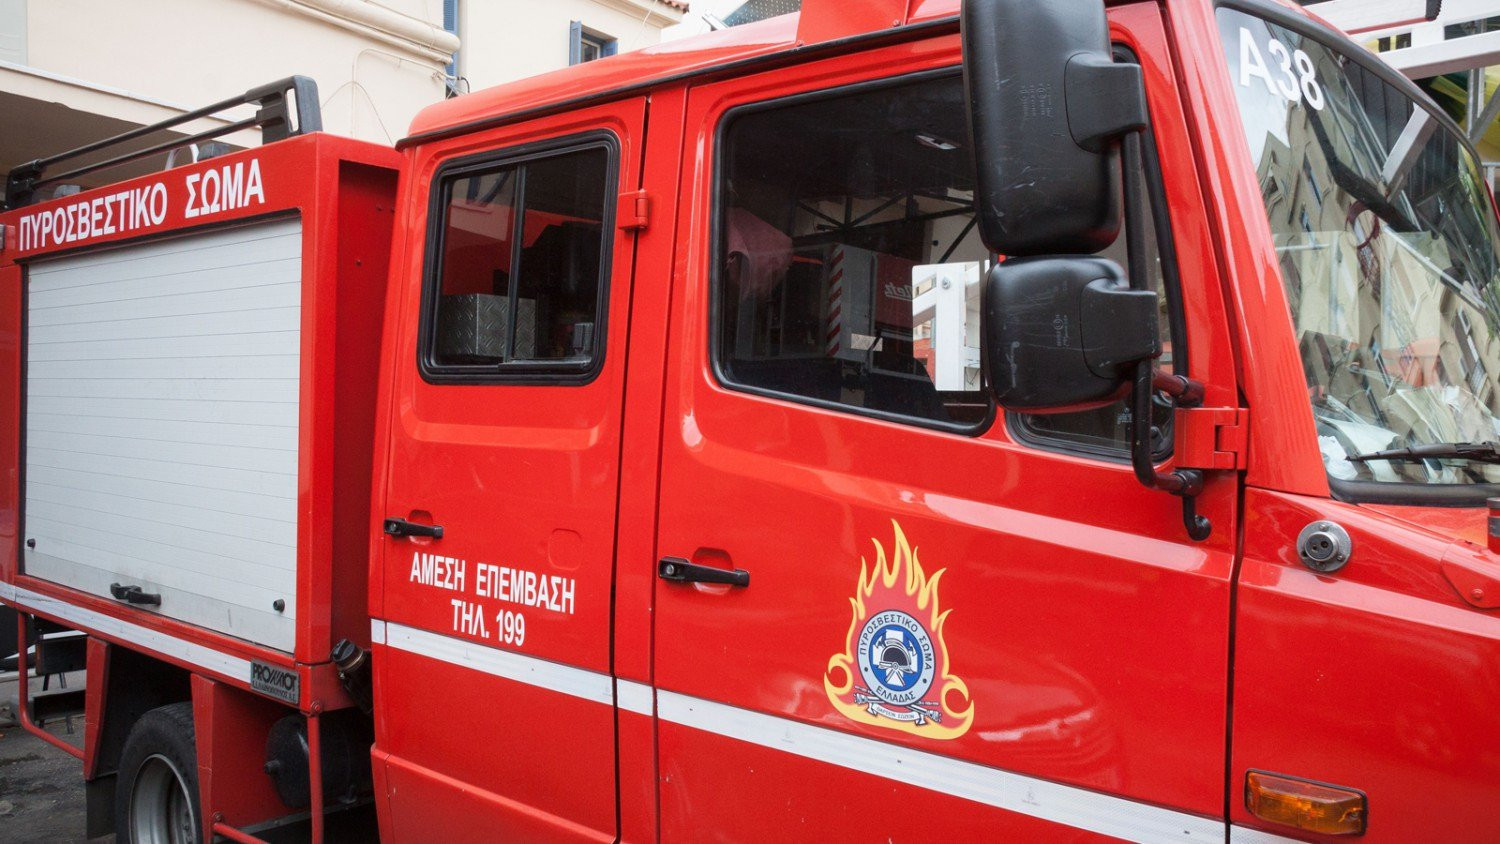 Εμπρηστική επίθεση σε δύο οχήματα εταιριών courier στη Θεσσαλονίκη